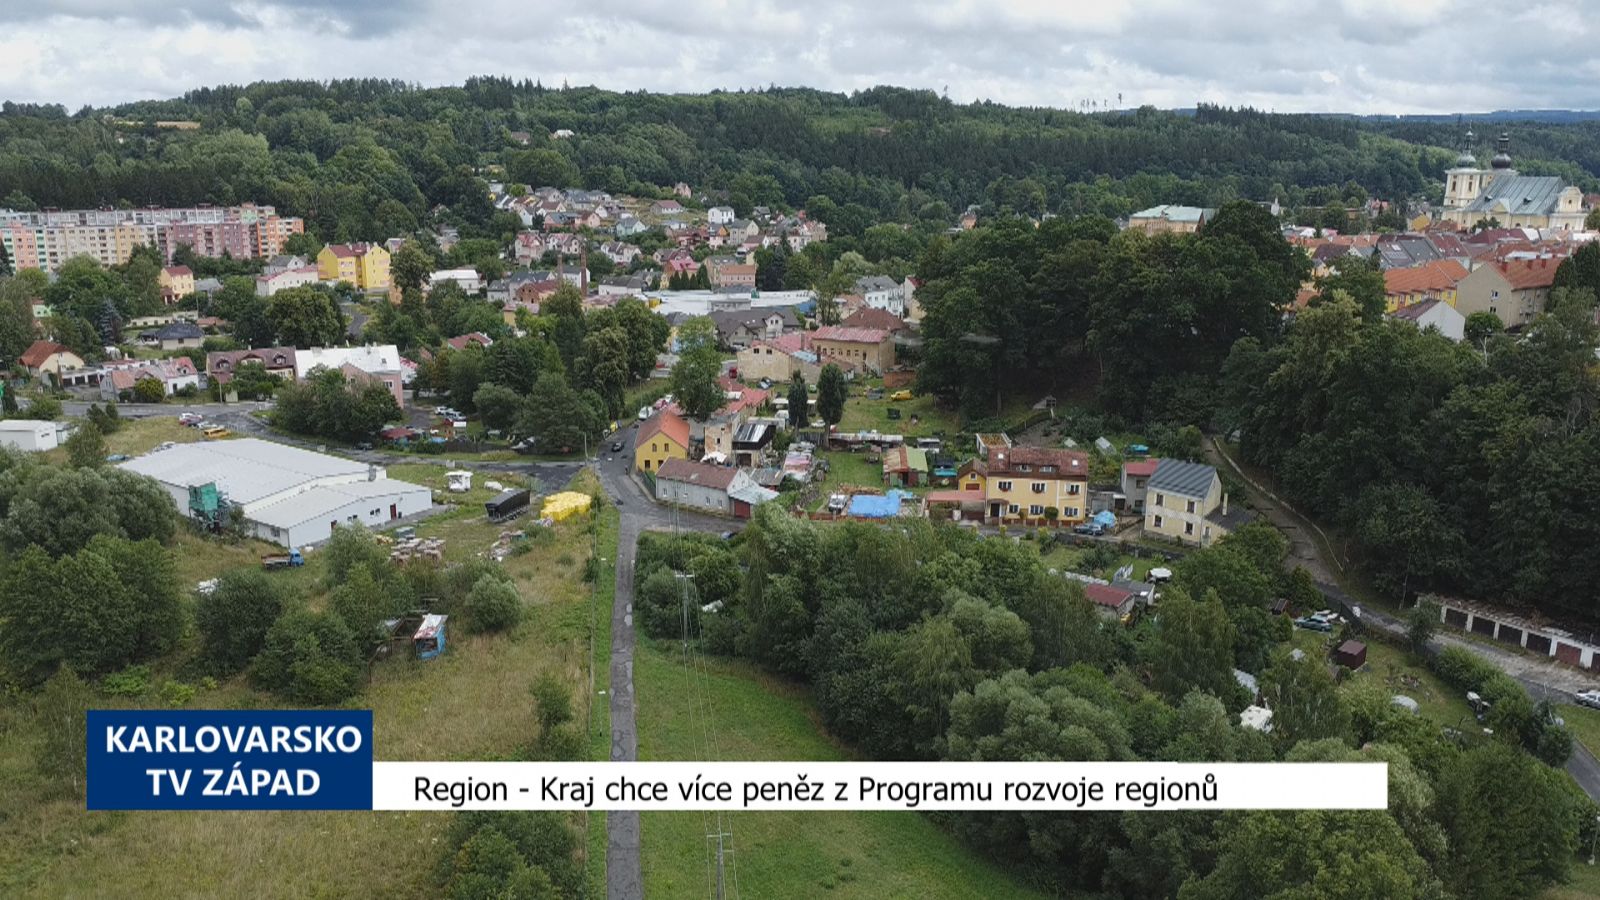 Region: Kraj chce více peněz z Programu rozvoje regionů (TV Západ)